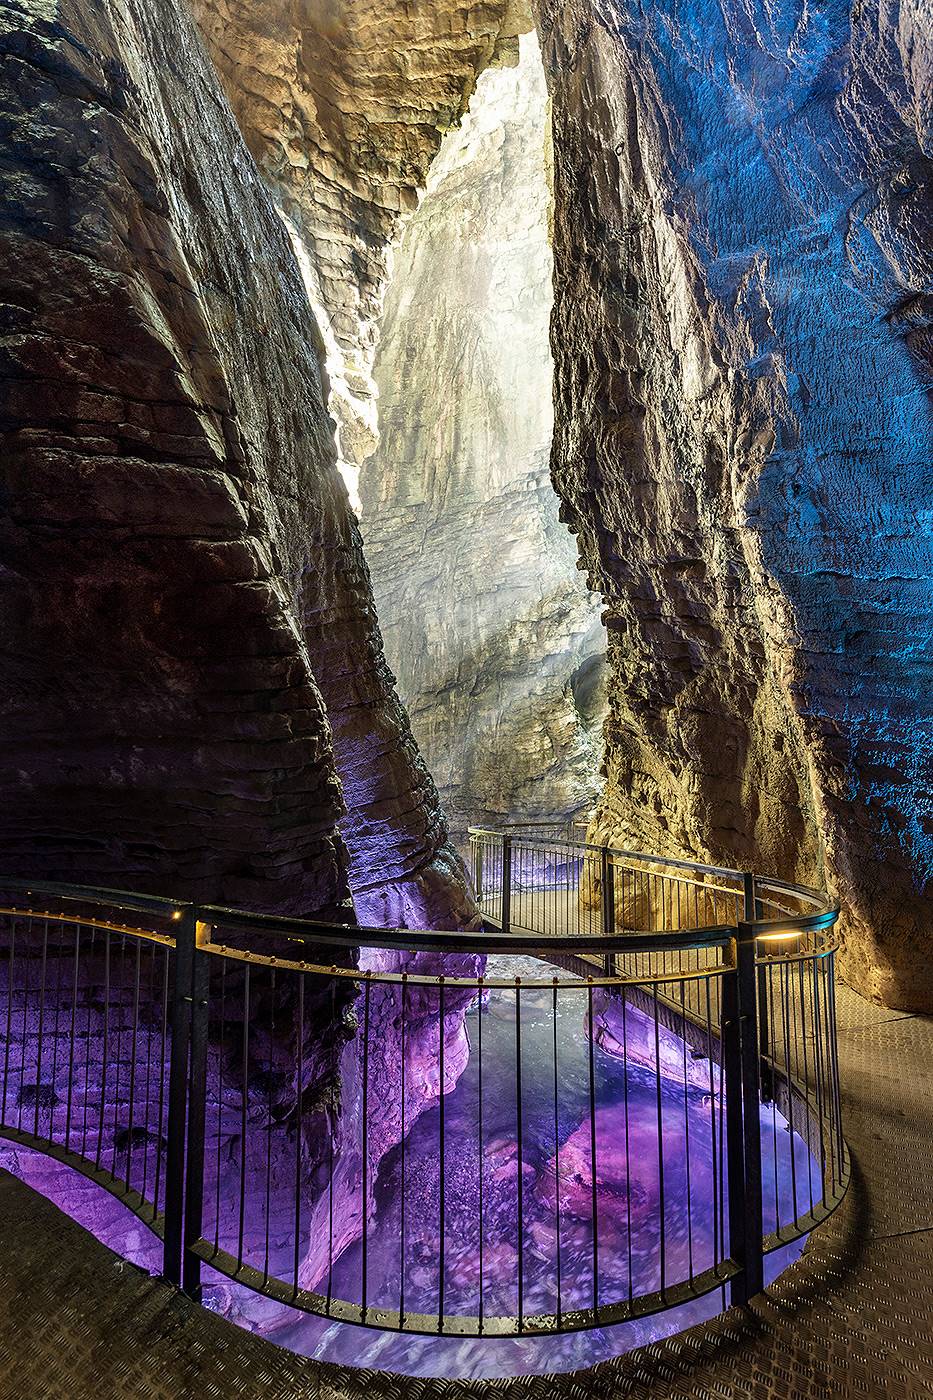 Baitone Alpino empfehlt Parco Grotta cascate del Varone